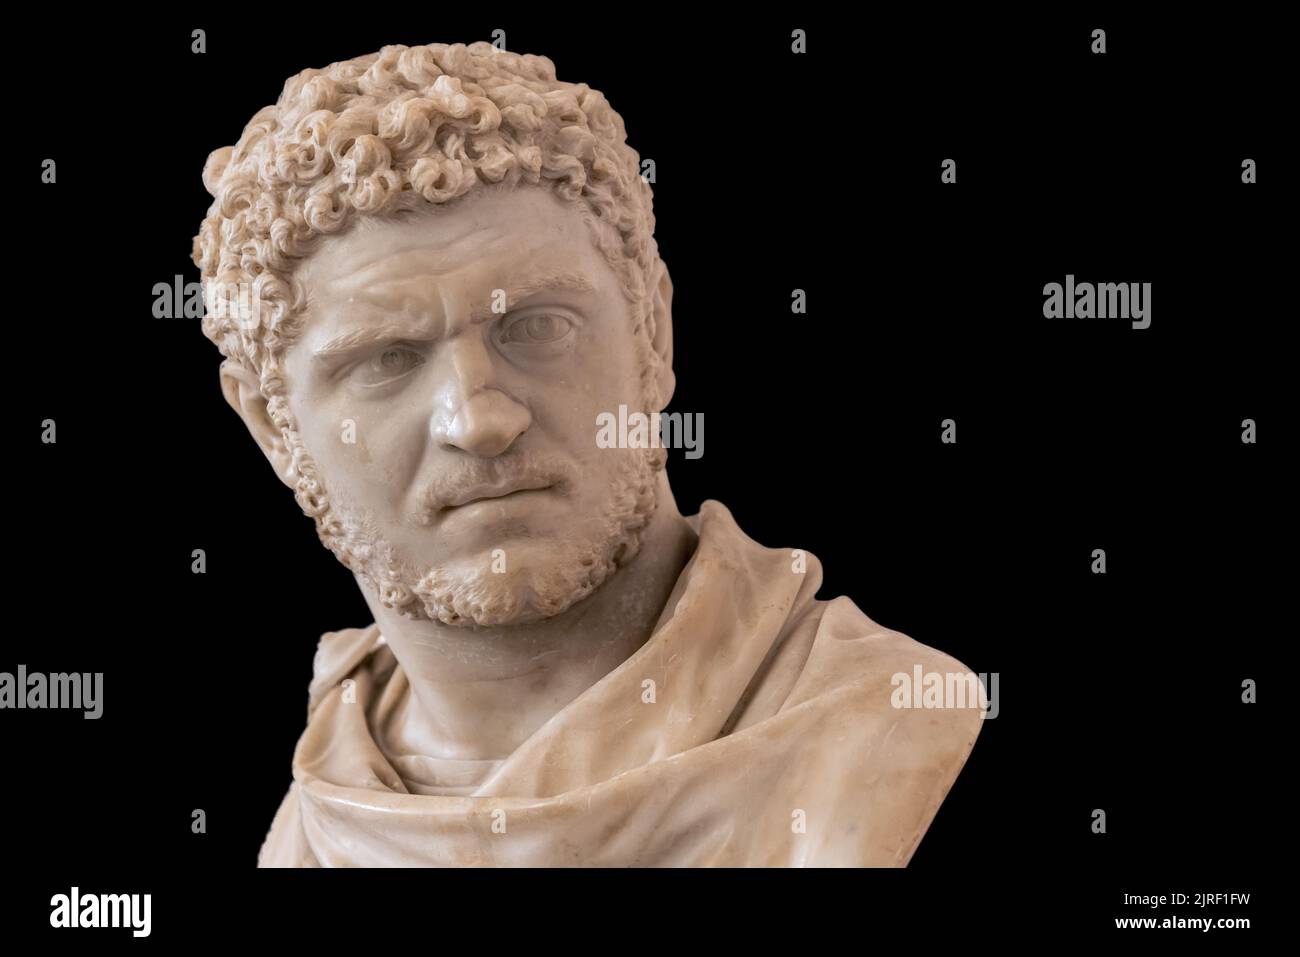 Gros plan sur l'ancien buste romain d'homme mûr et grognon Banque D'Images